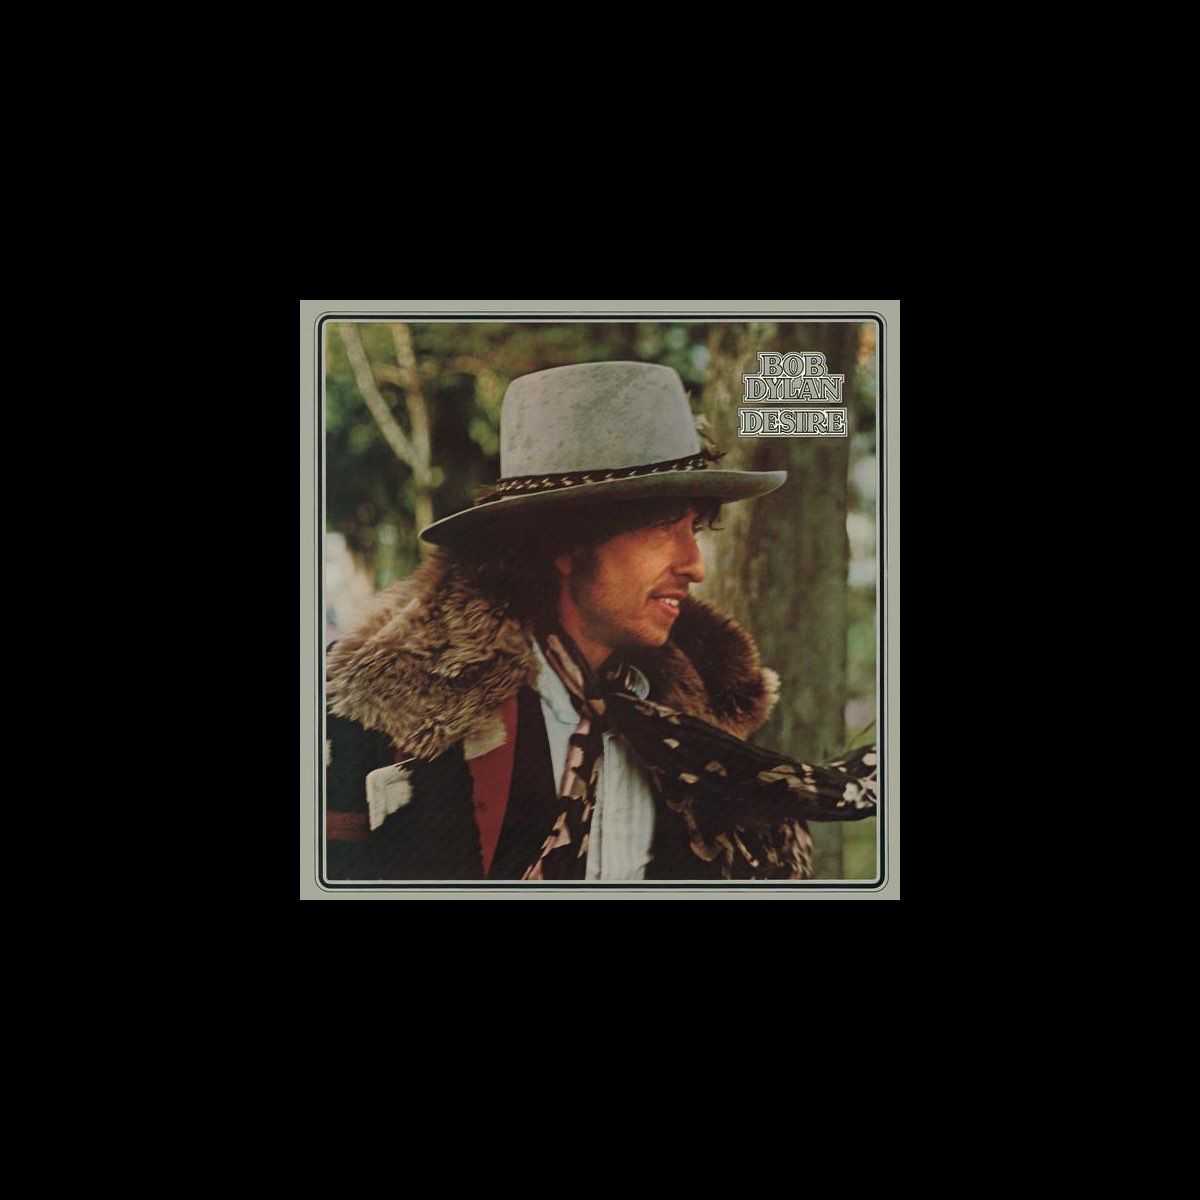 300円 売れ筋 Bob Dylan Desire 1976 1991年発売 SRCS-6168 廃盤 国内盤帯付 歌詞対訳付 Hurricane Mozambique SSW Folk